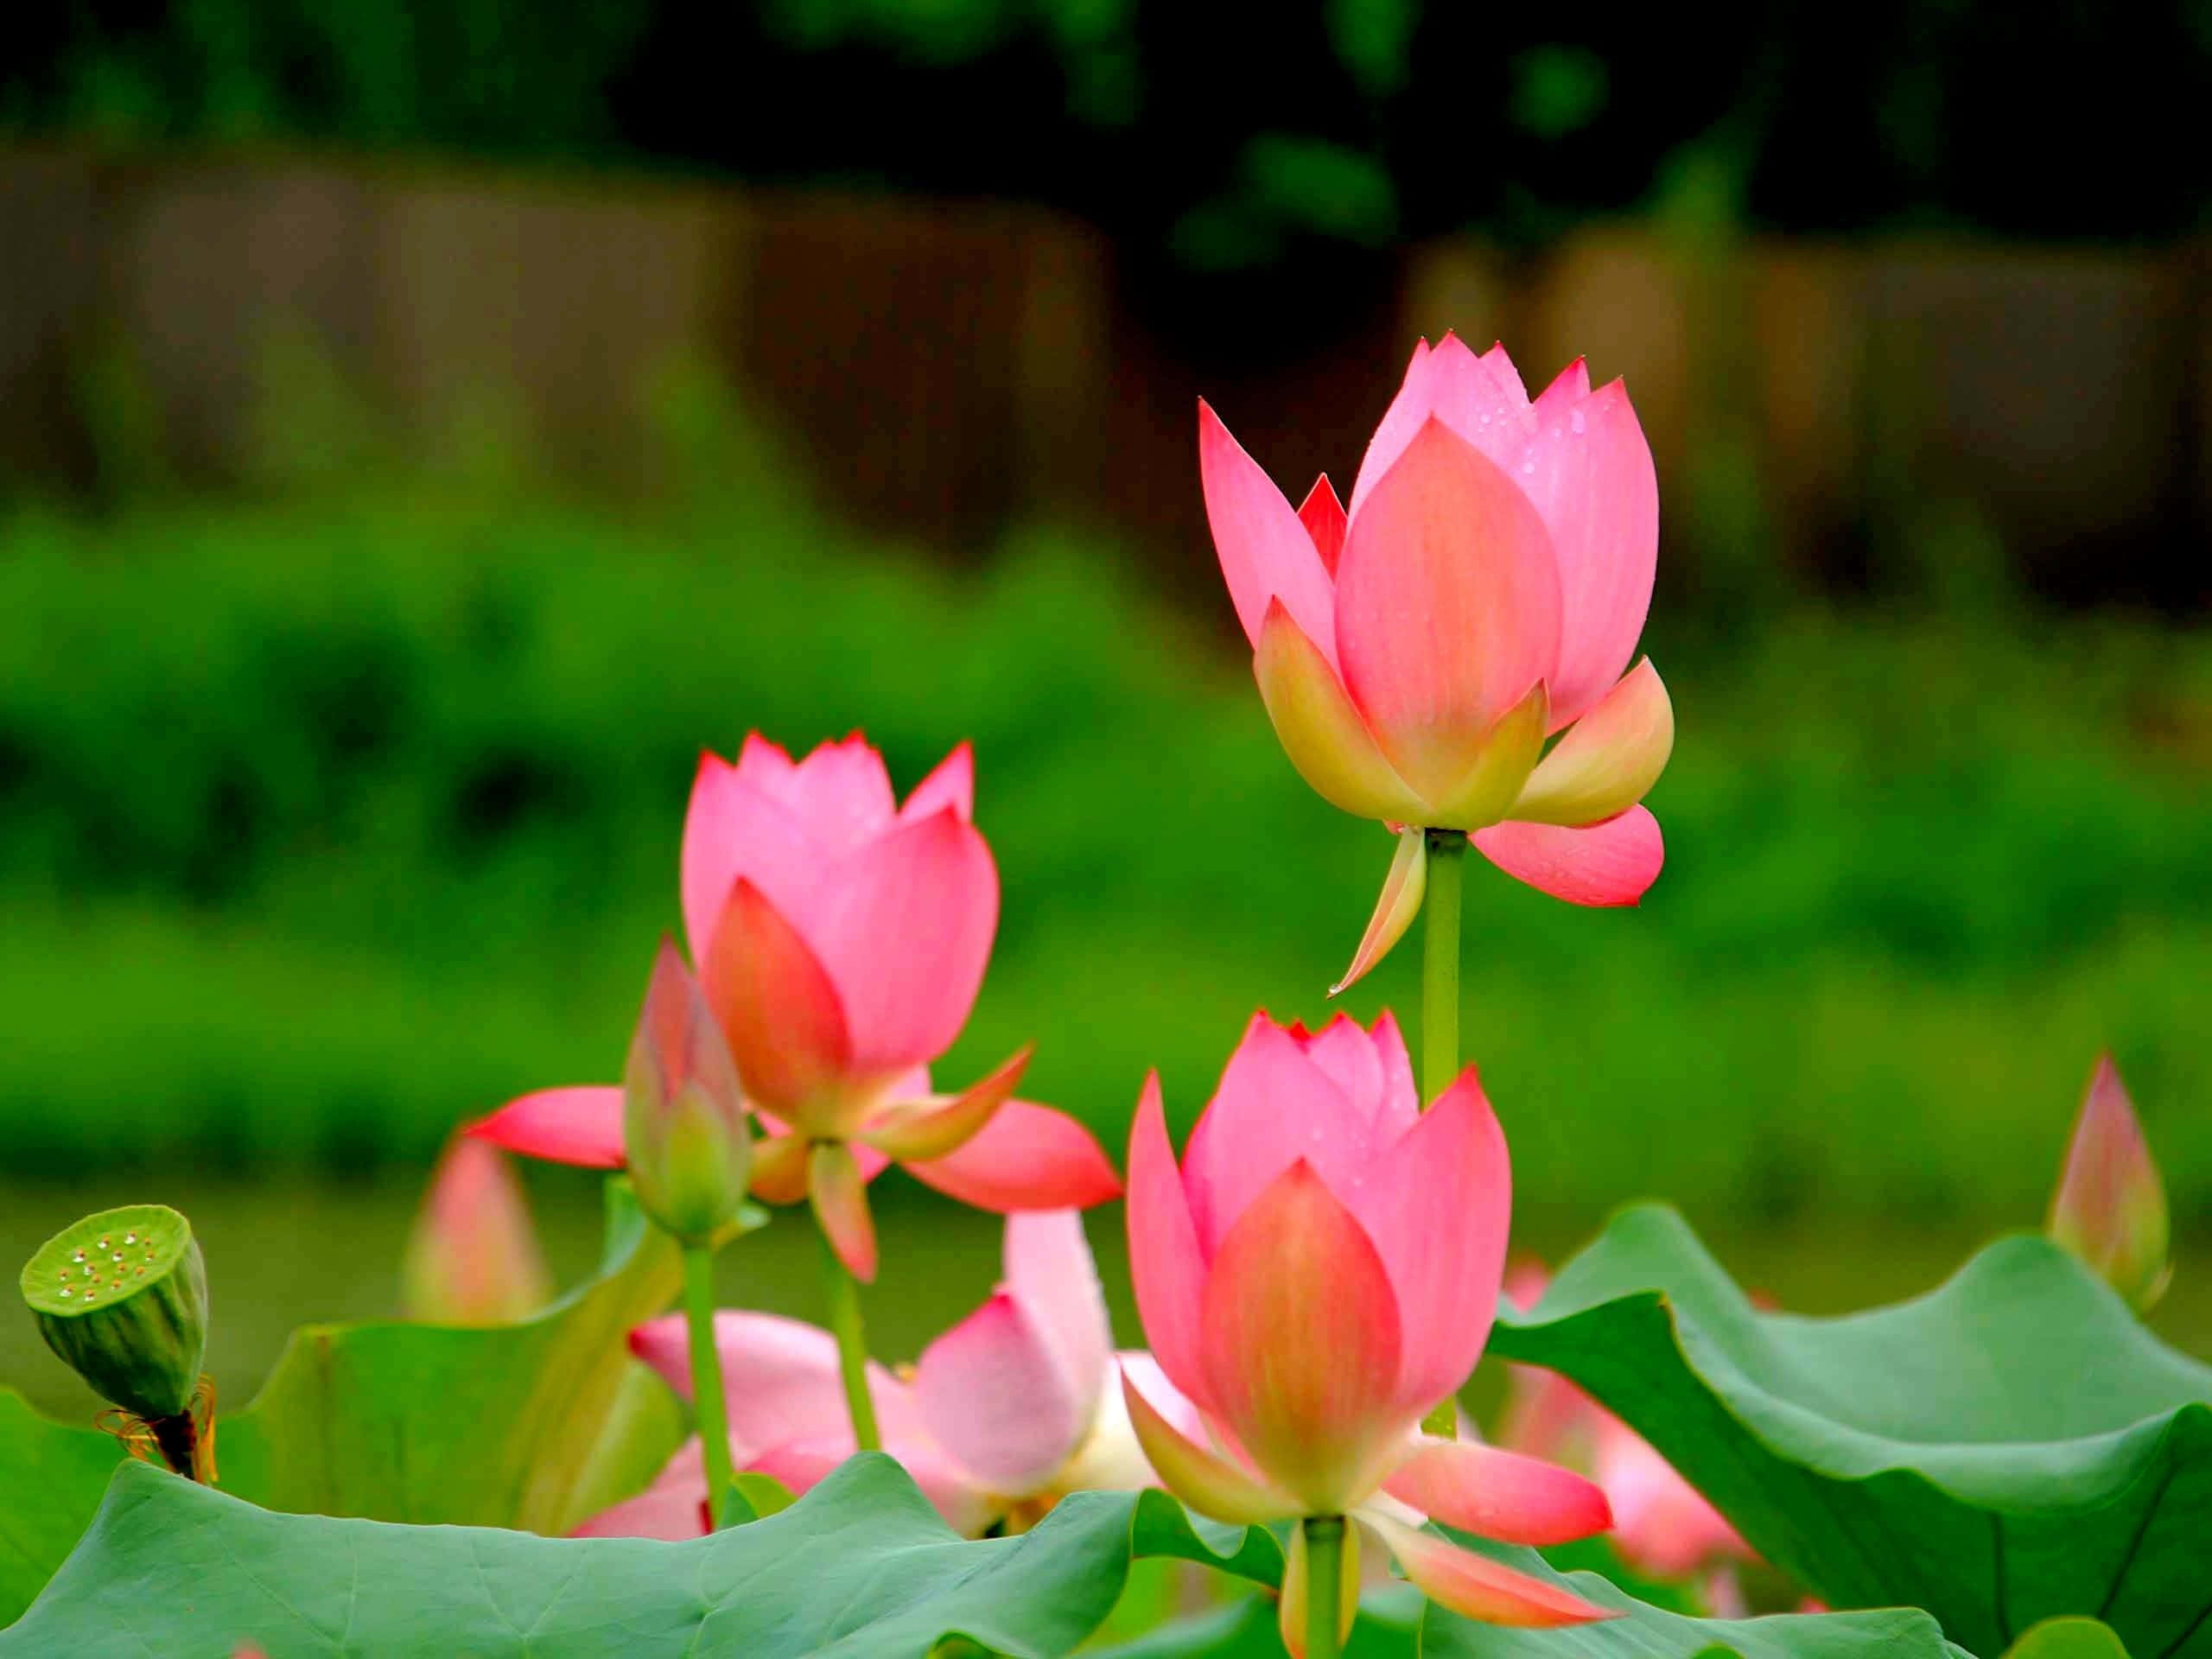 Caption: A Serene Lotus Flower in Full Bloom